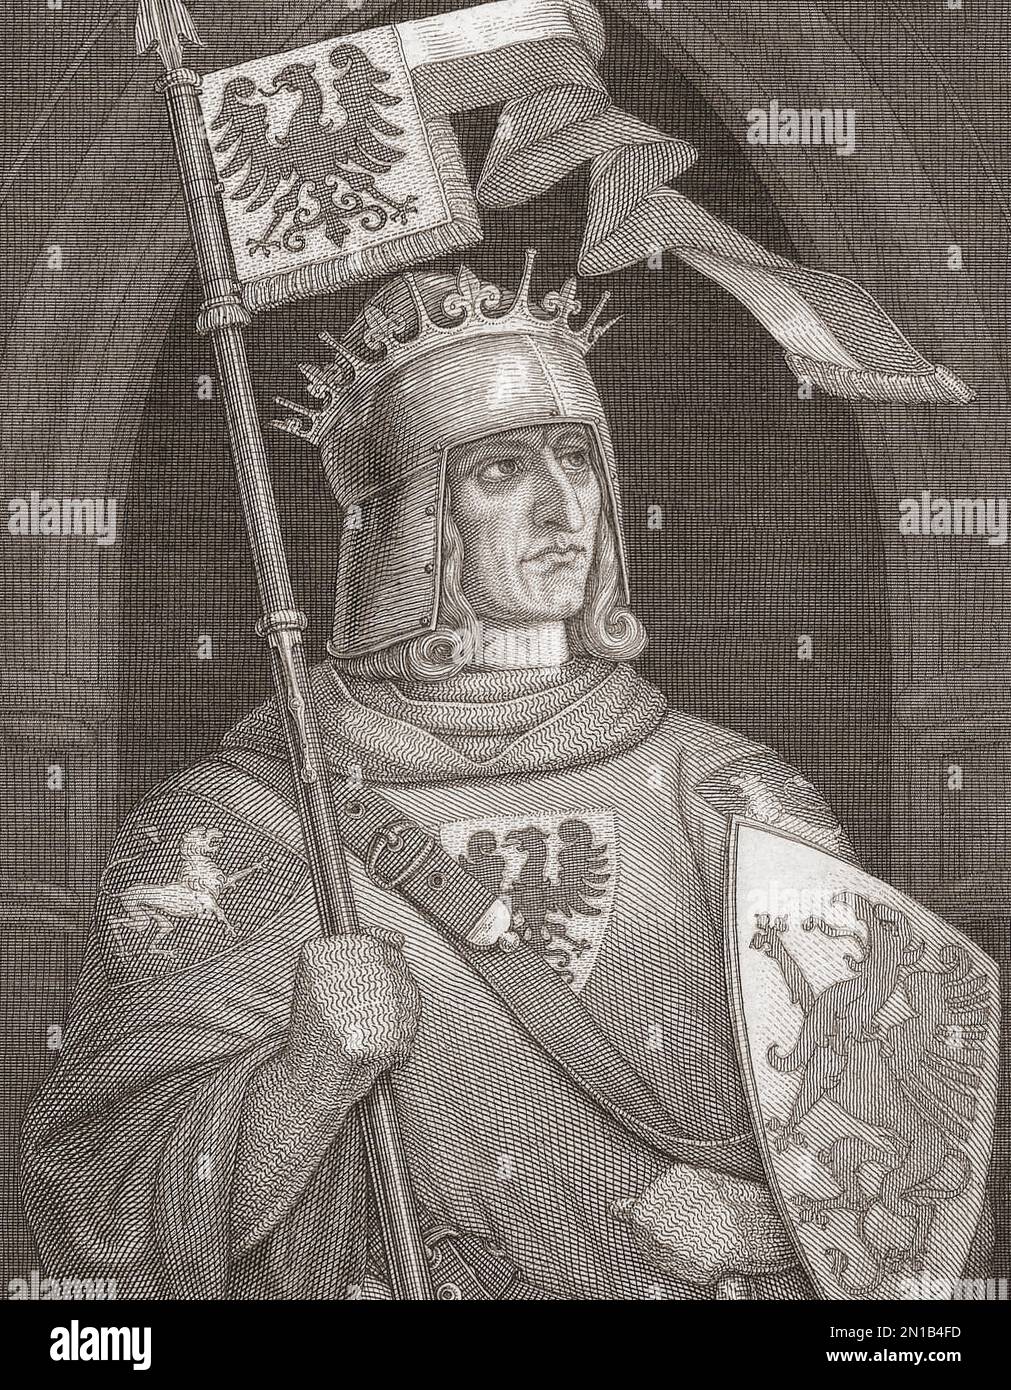 Rudolf I, auch bekannt als Rudolf von Habsburg oder der Habsburger, 1218 - 1291. Erster deutscher König der Habsburger Dynastie. Stockfoto